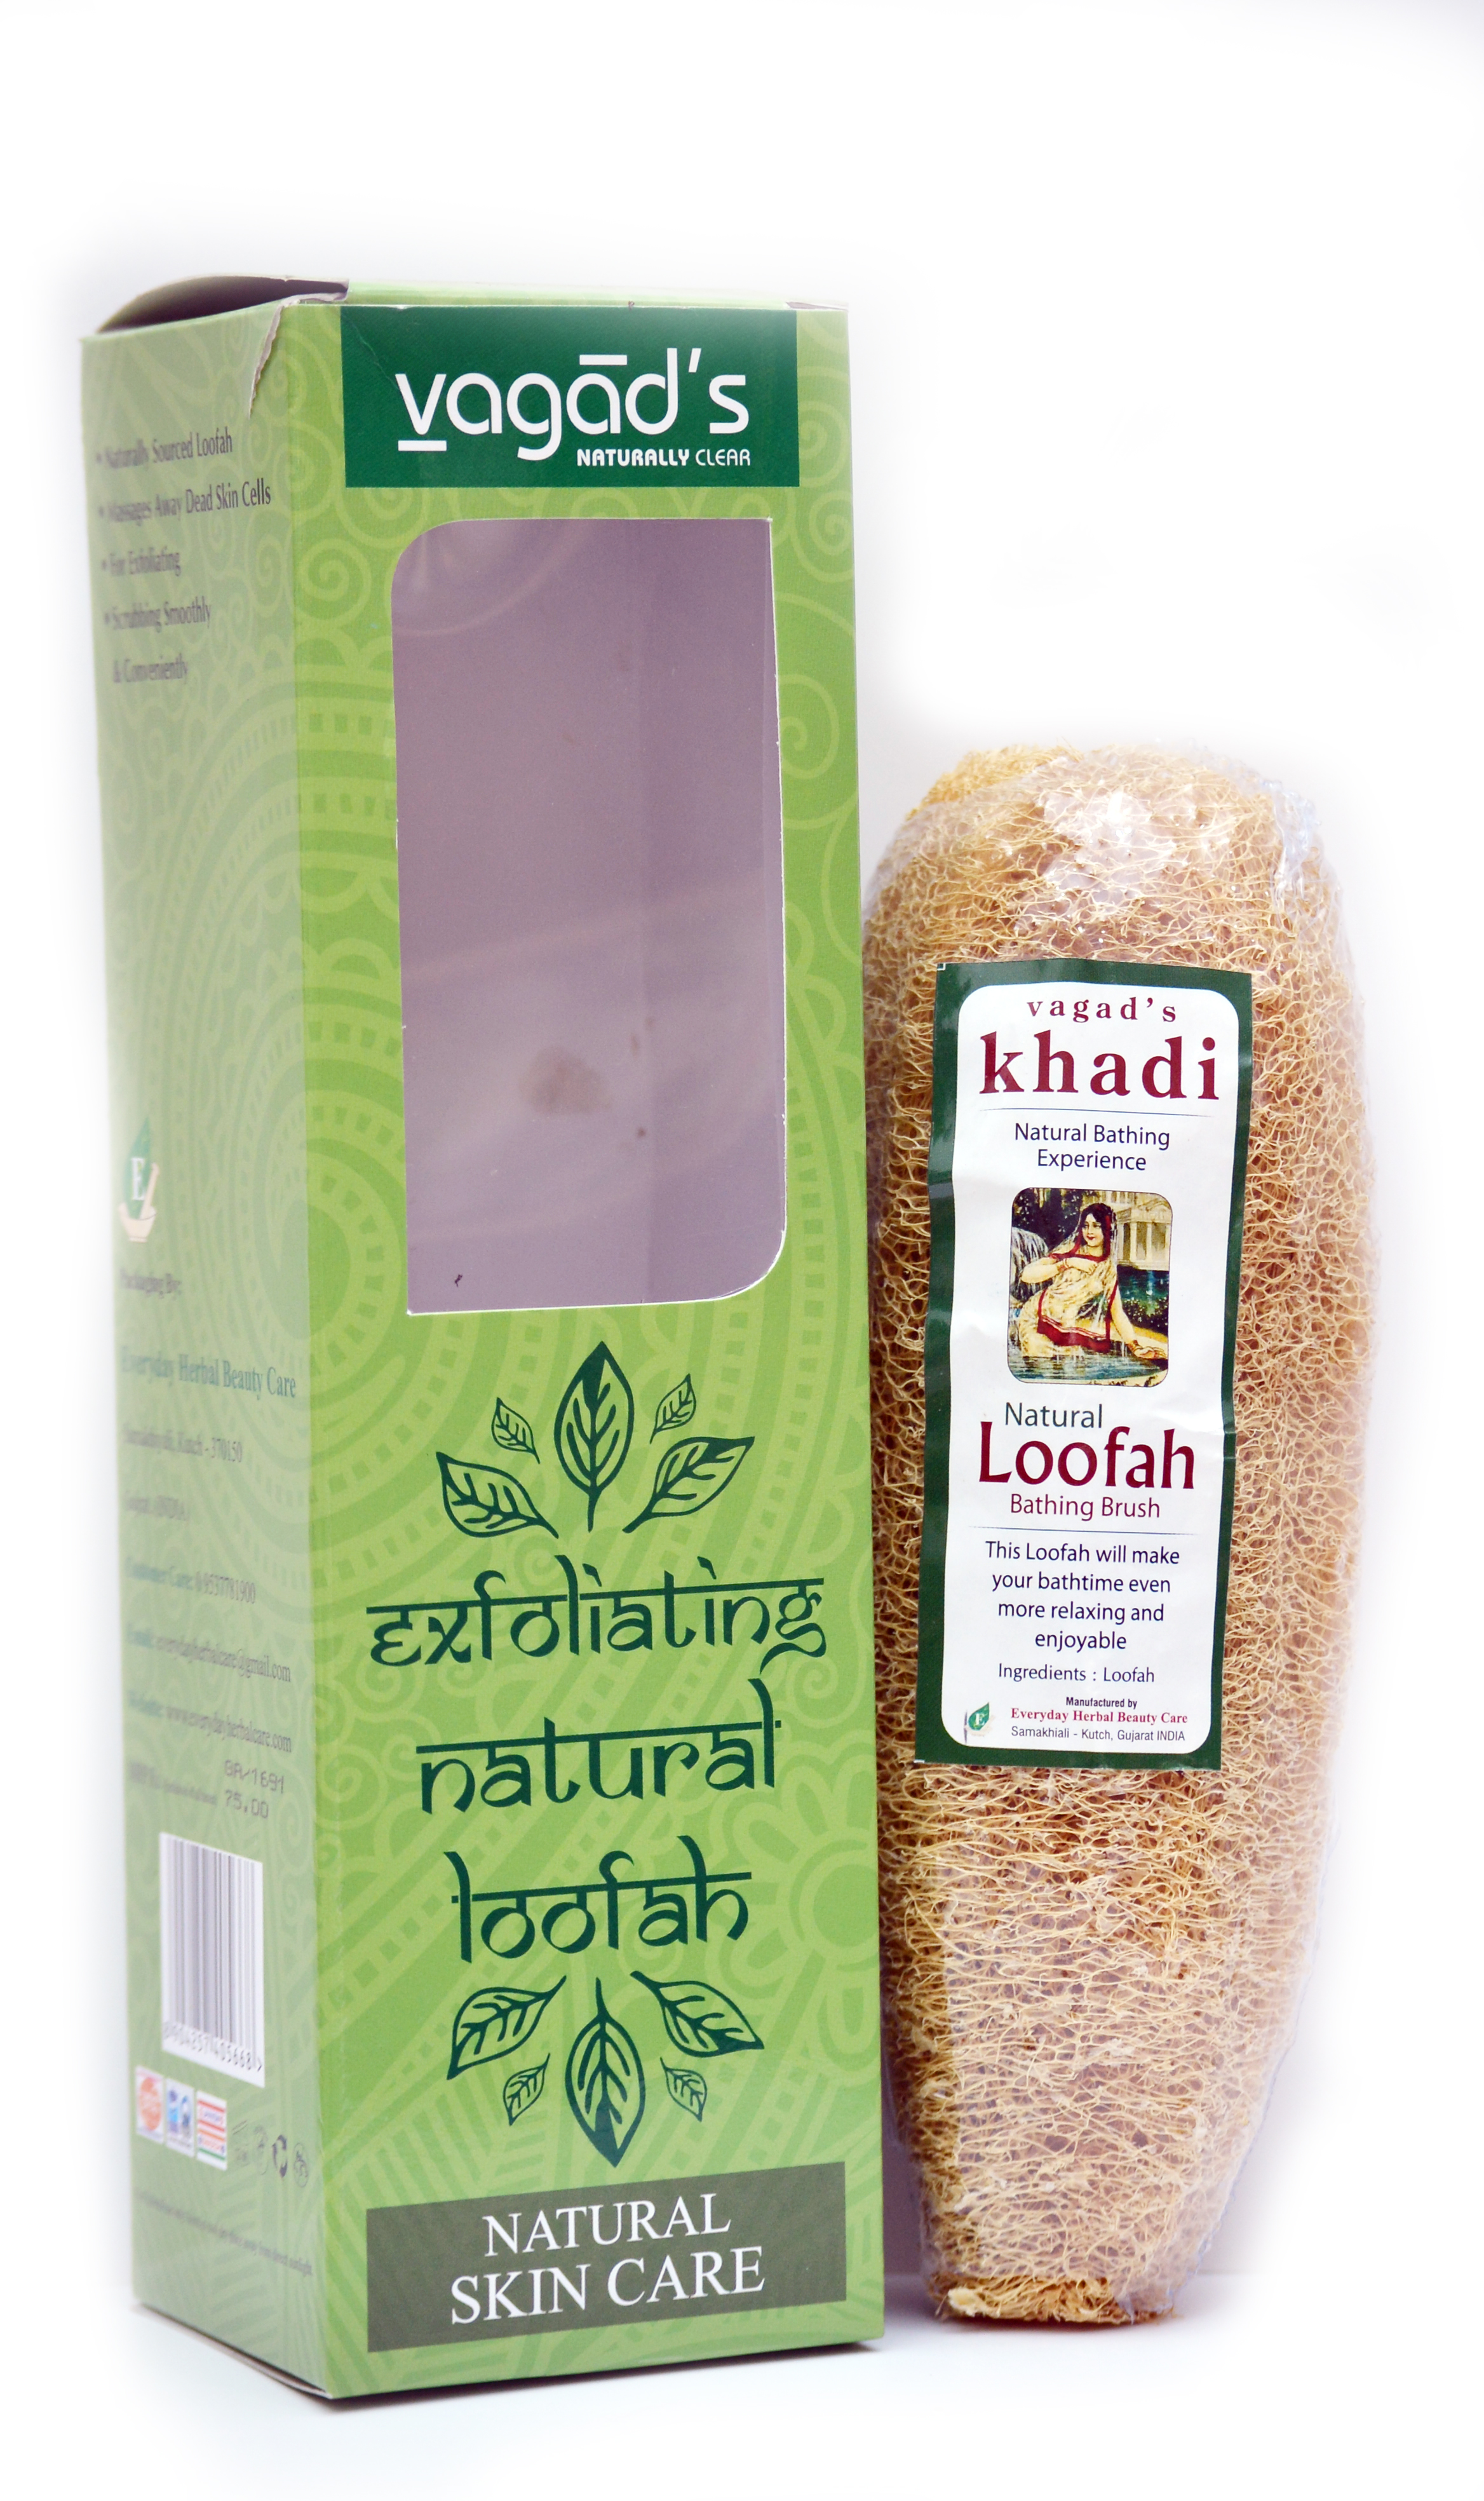 Buy Vagad's Khadi Natural Loofa at Best Price Online